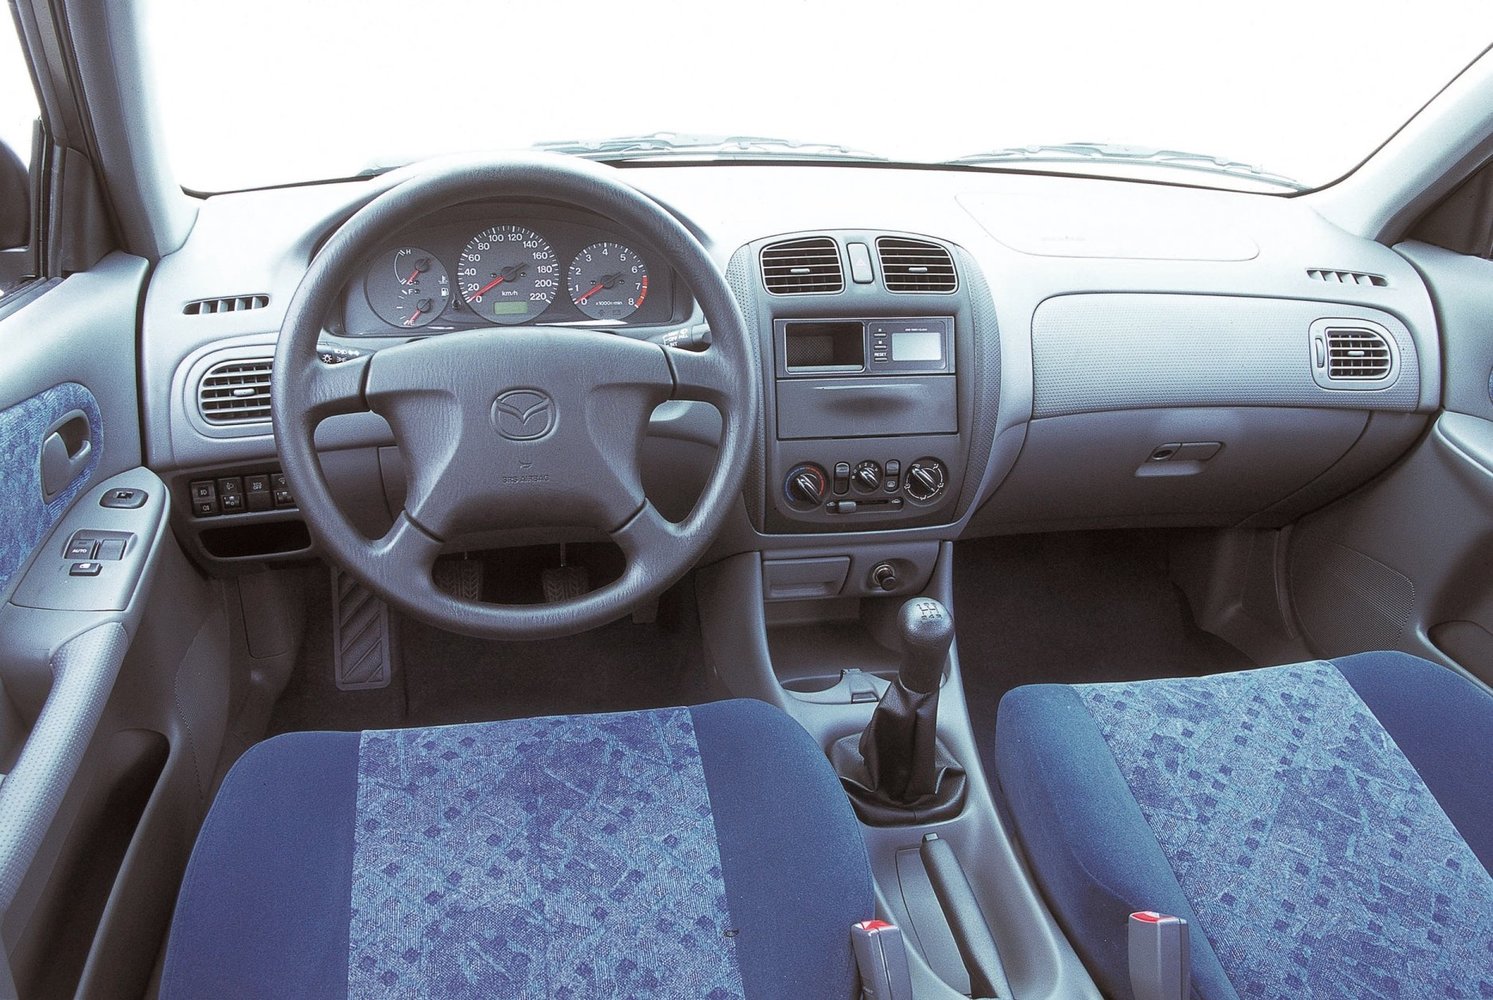 хэтчбек 5 дв. Mazda 323 1998 - 2000г выпуска модификация 1.3 MT (73 л.с.)